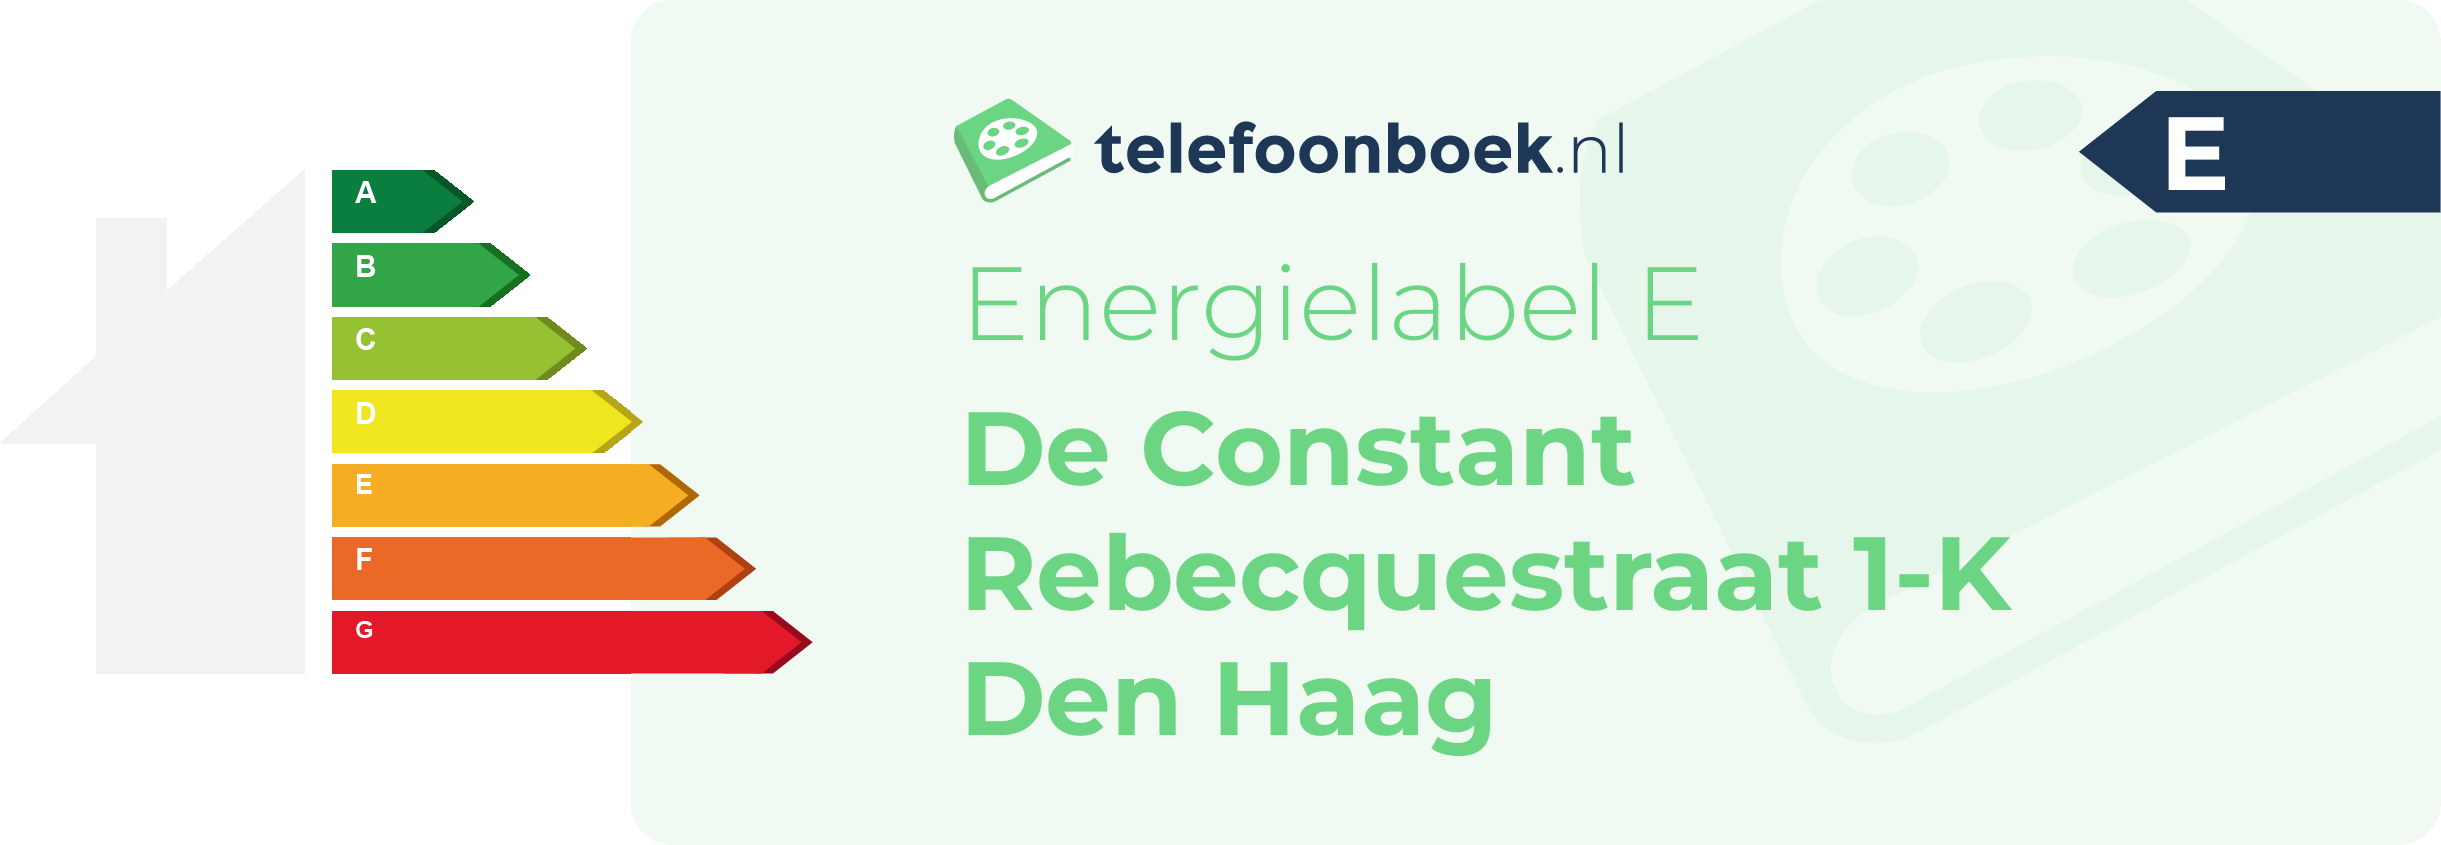 Energielabel De Constant Rebecquestraat 1-K Den Haag